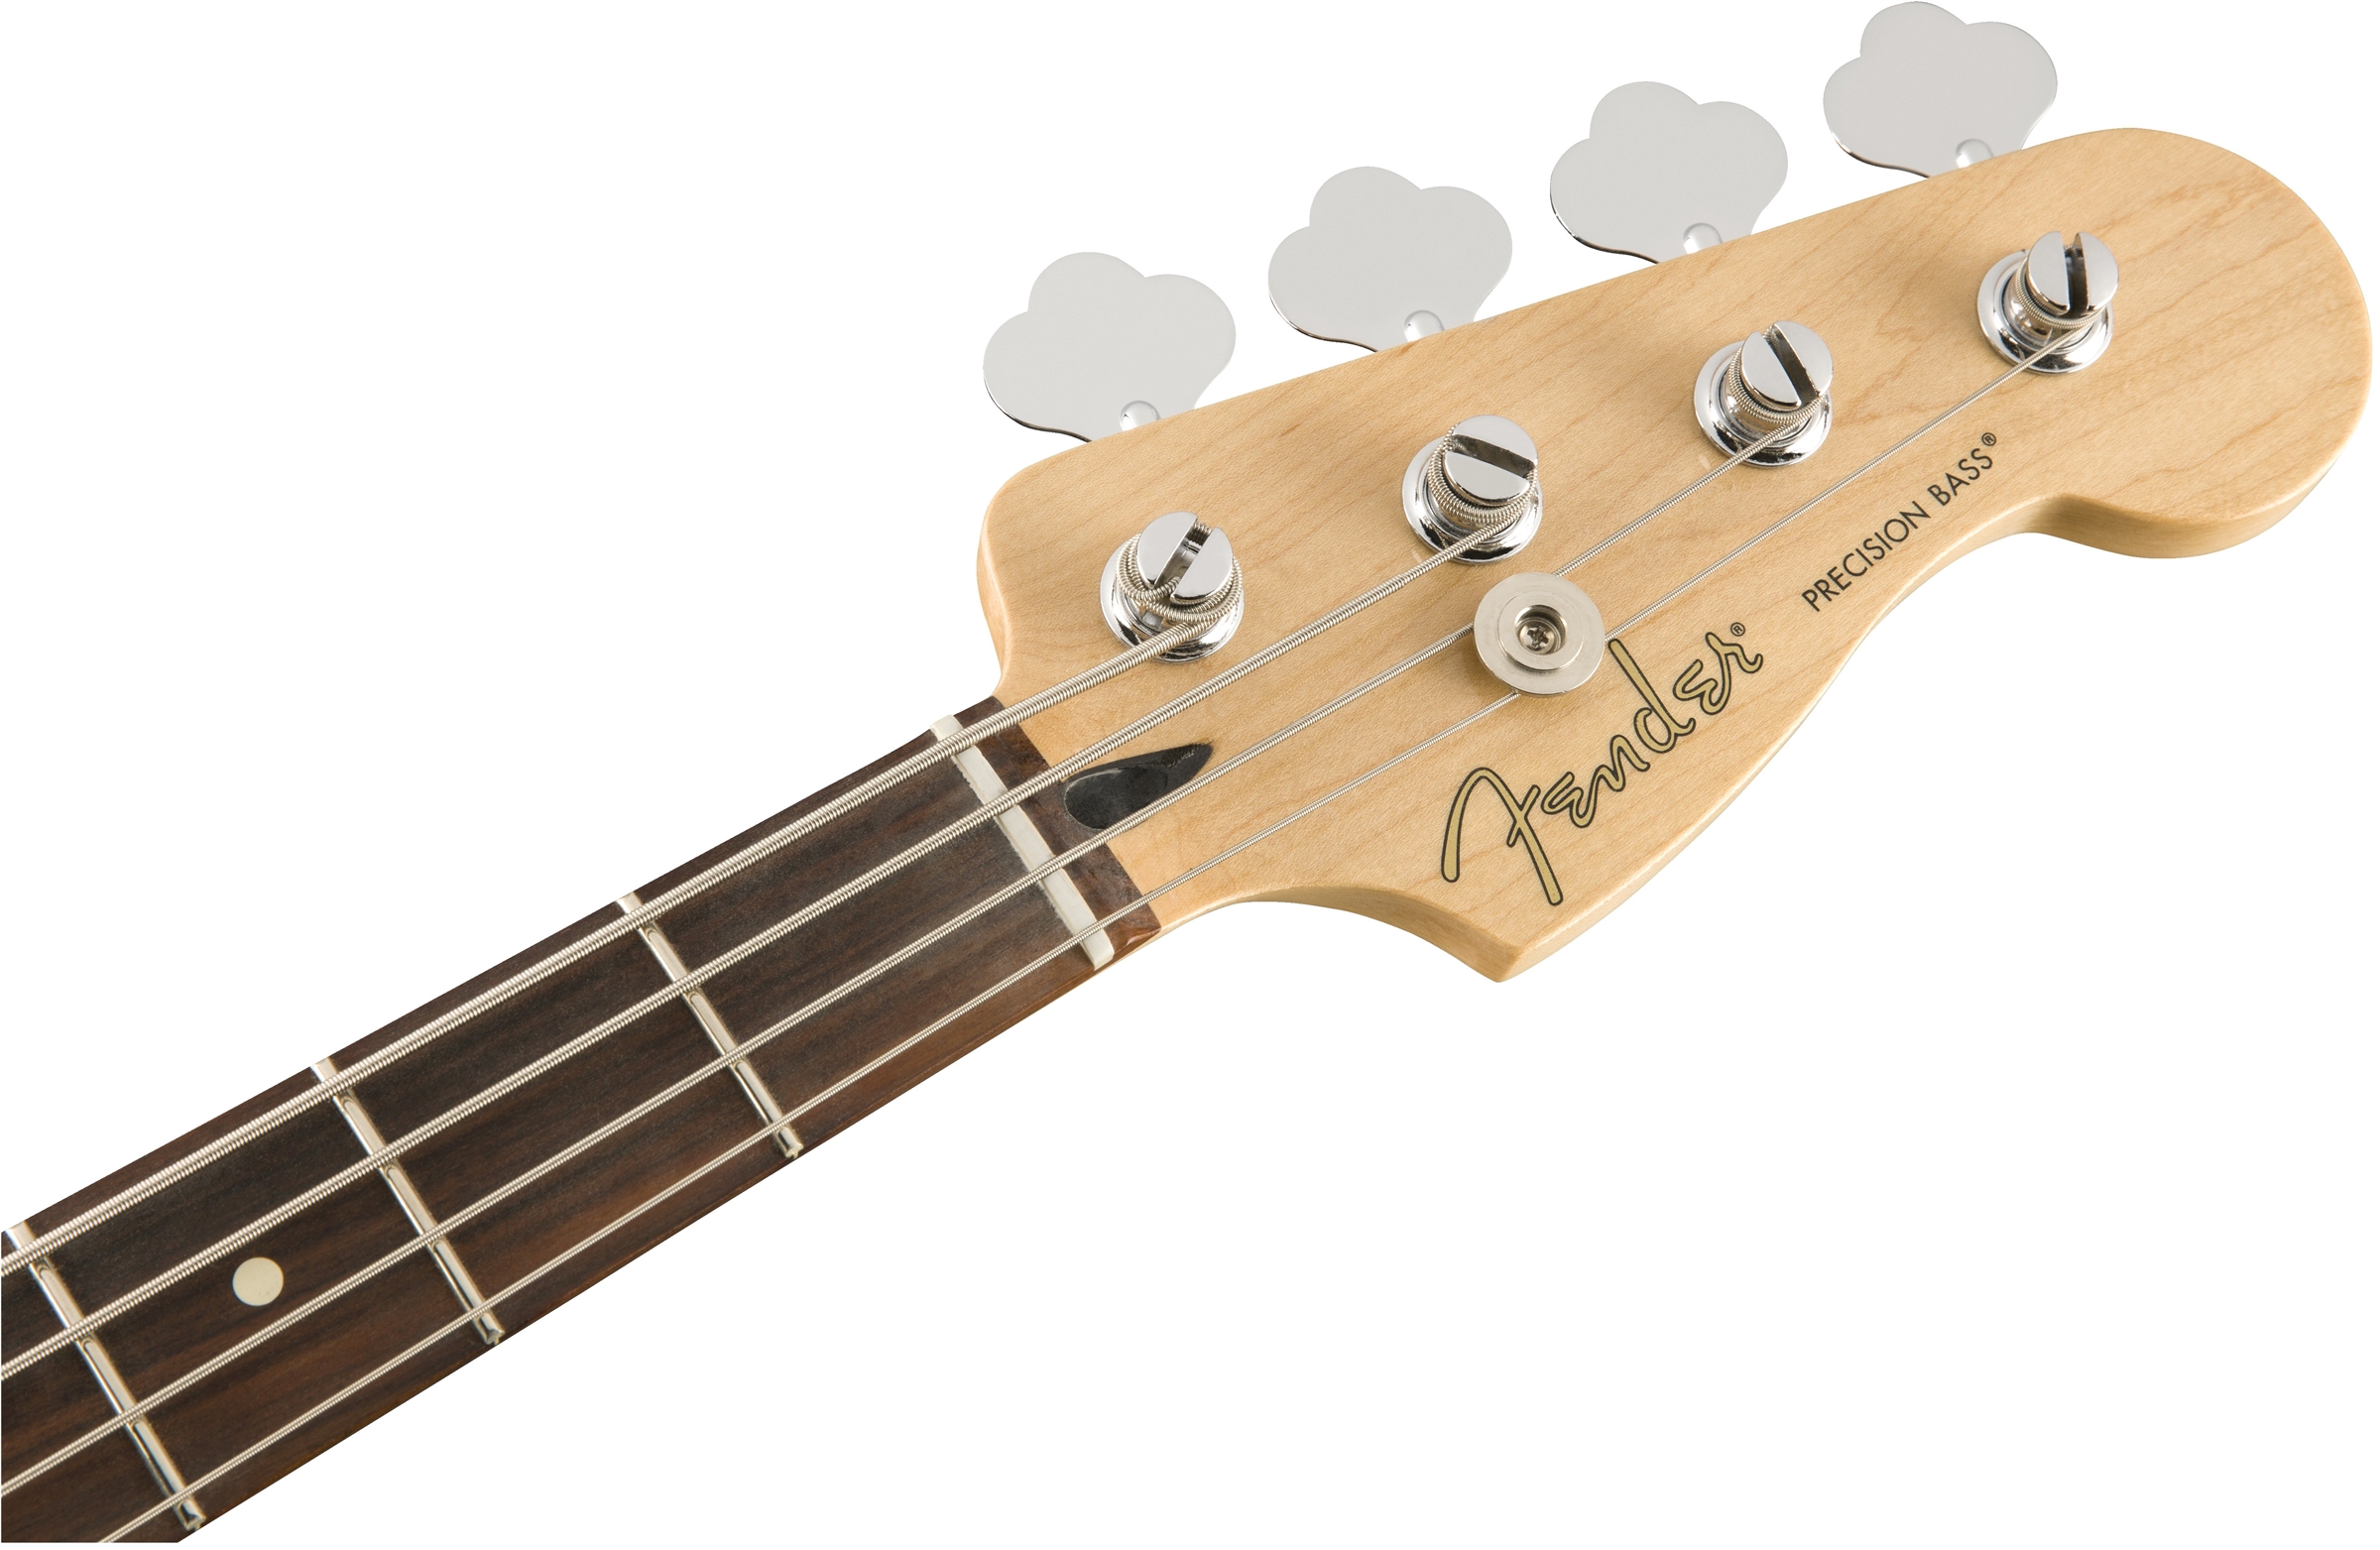 Fender Precision Bass Player Mex Pf - Sage Green Metallic - Bajo eléctrico de cuerpo sólido - Variation 4